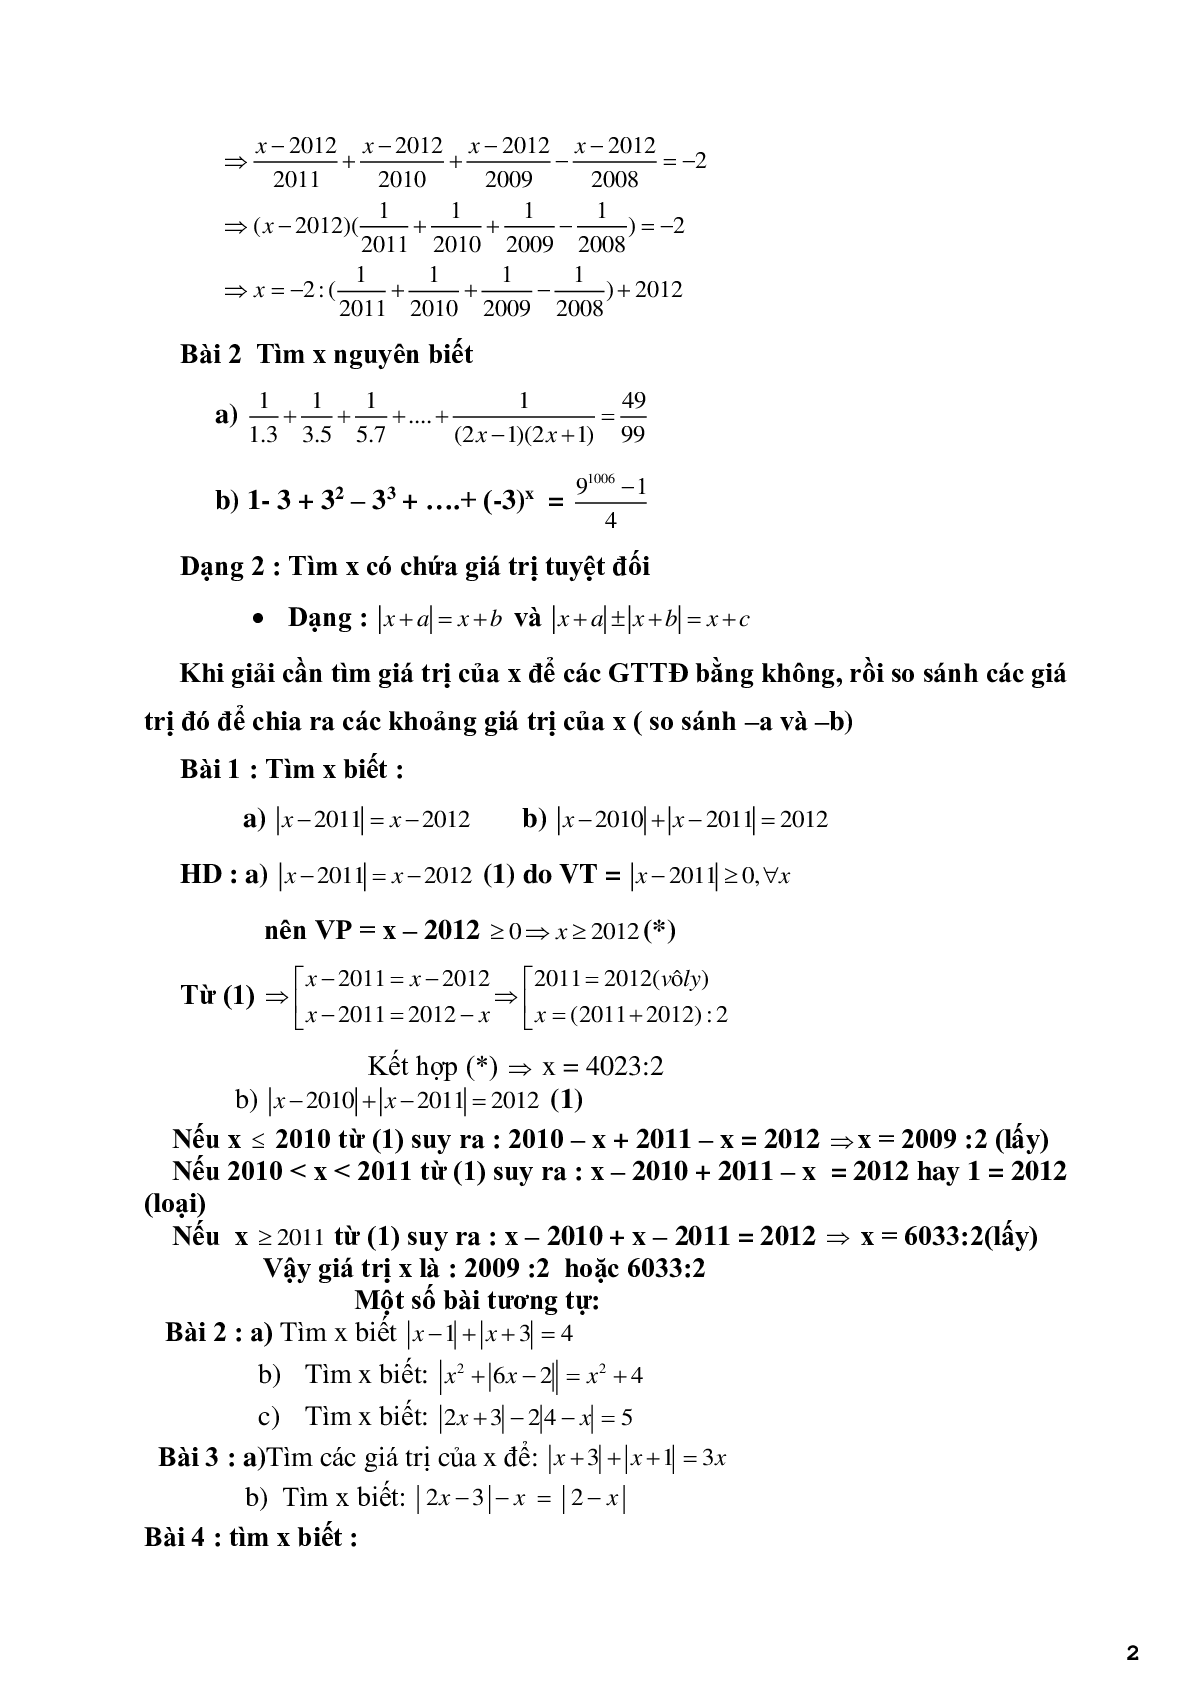 Chuyên đề 3 - Vận dụng tính chất phép toán để tìm x, y - có đáp án (trang 2)